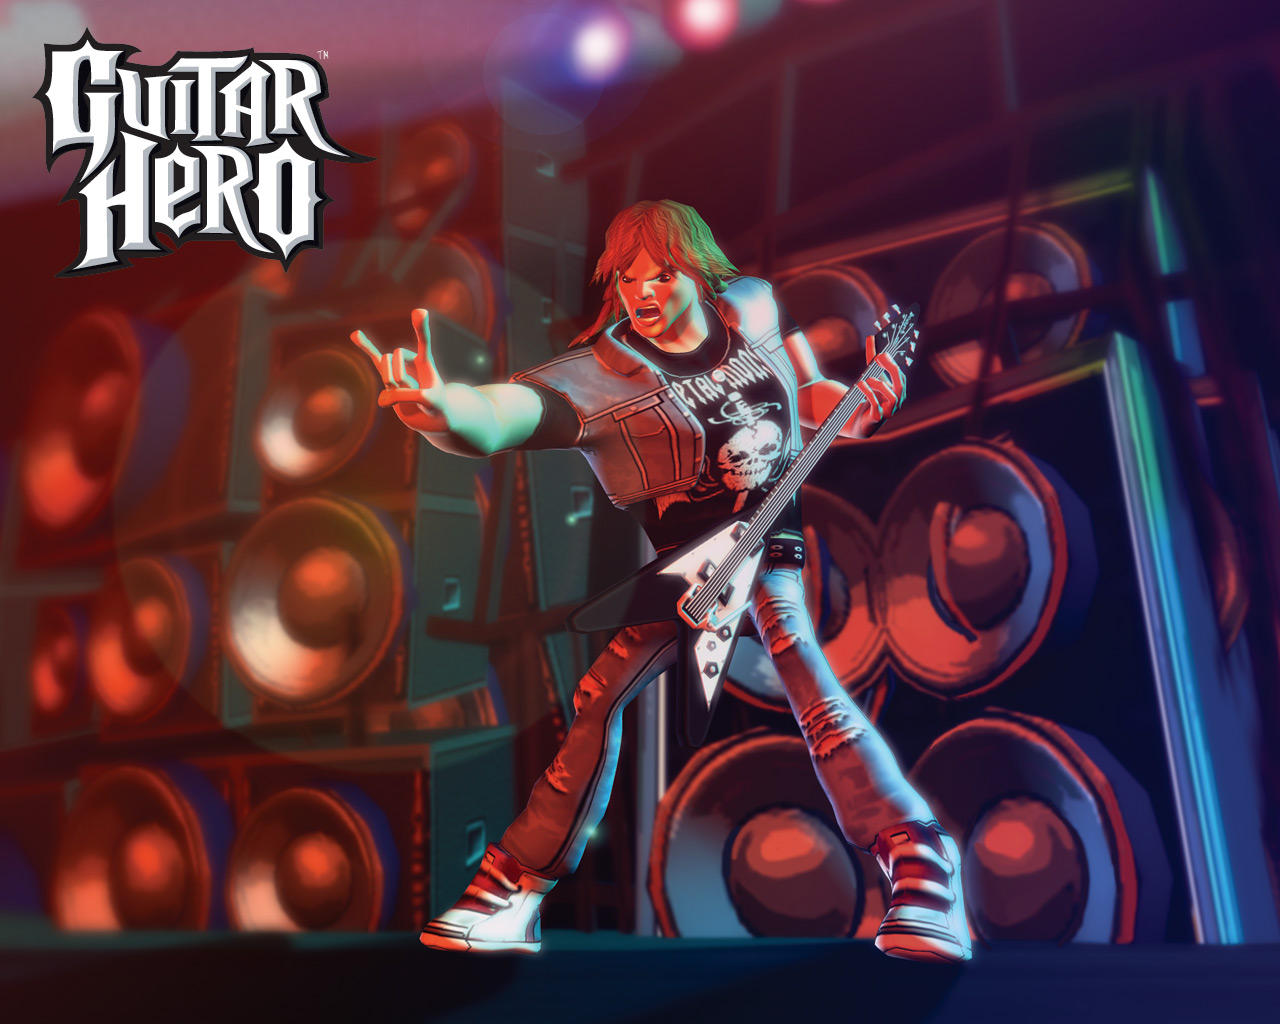 Video Game Guitar Hero 1280x1024